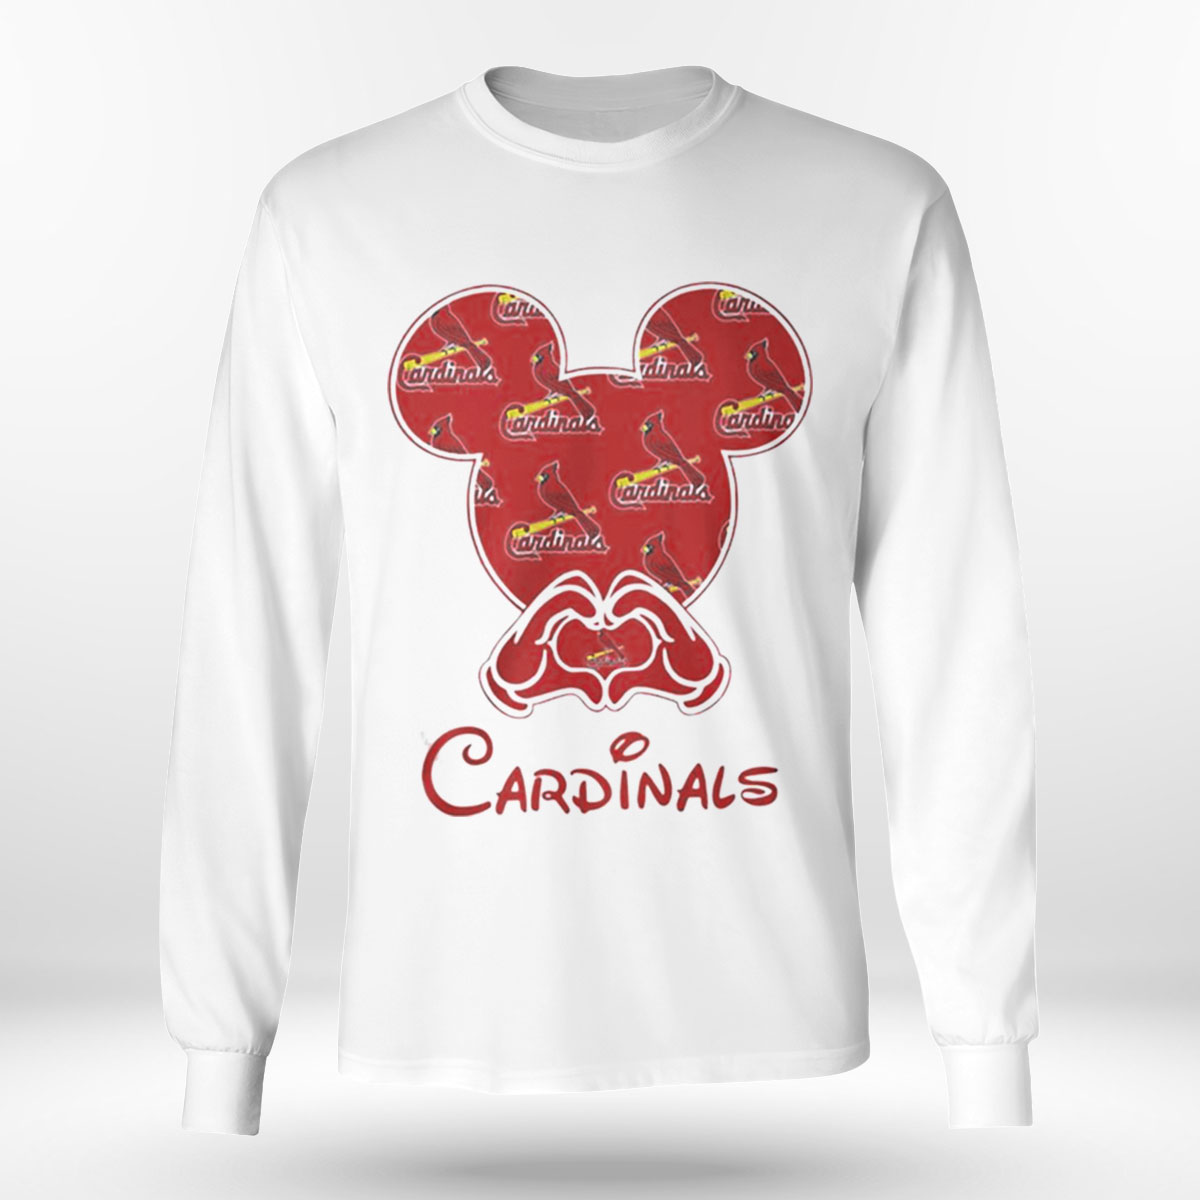 st louis cardinals football shirt